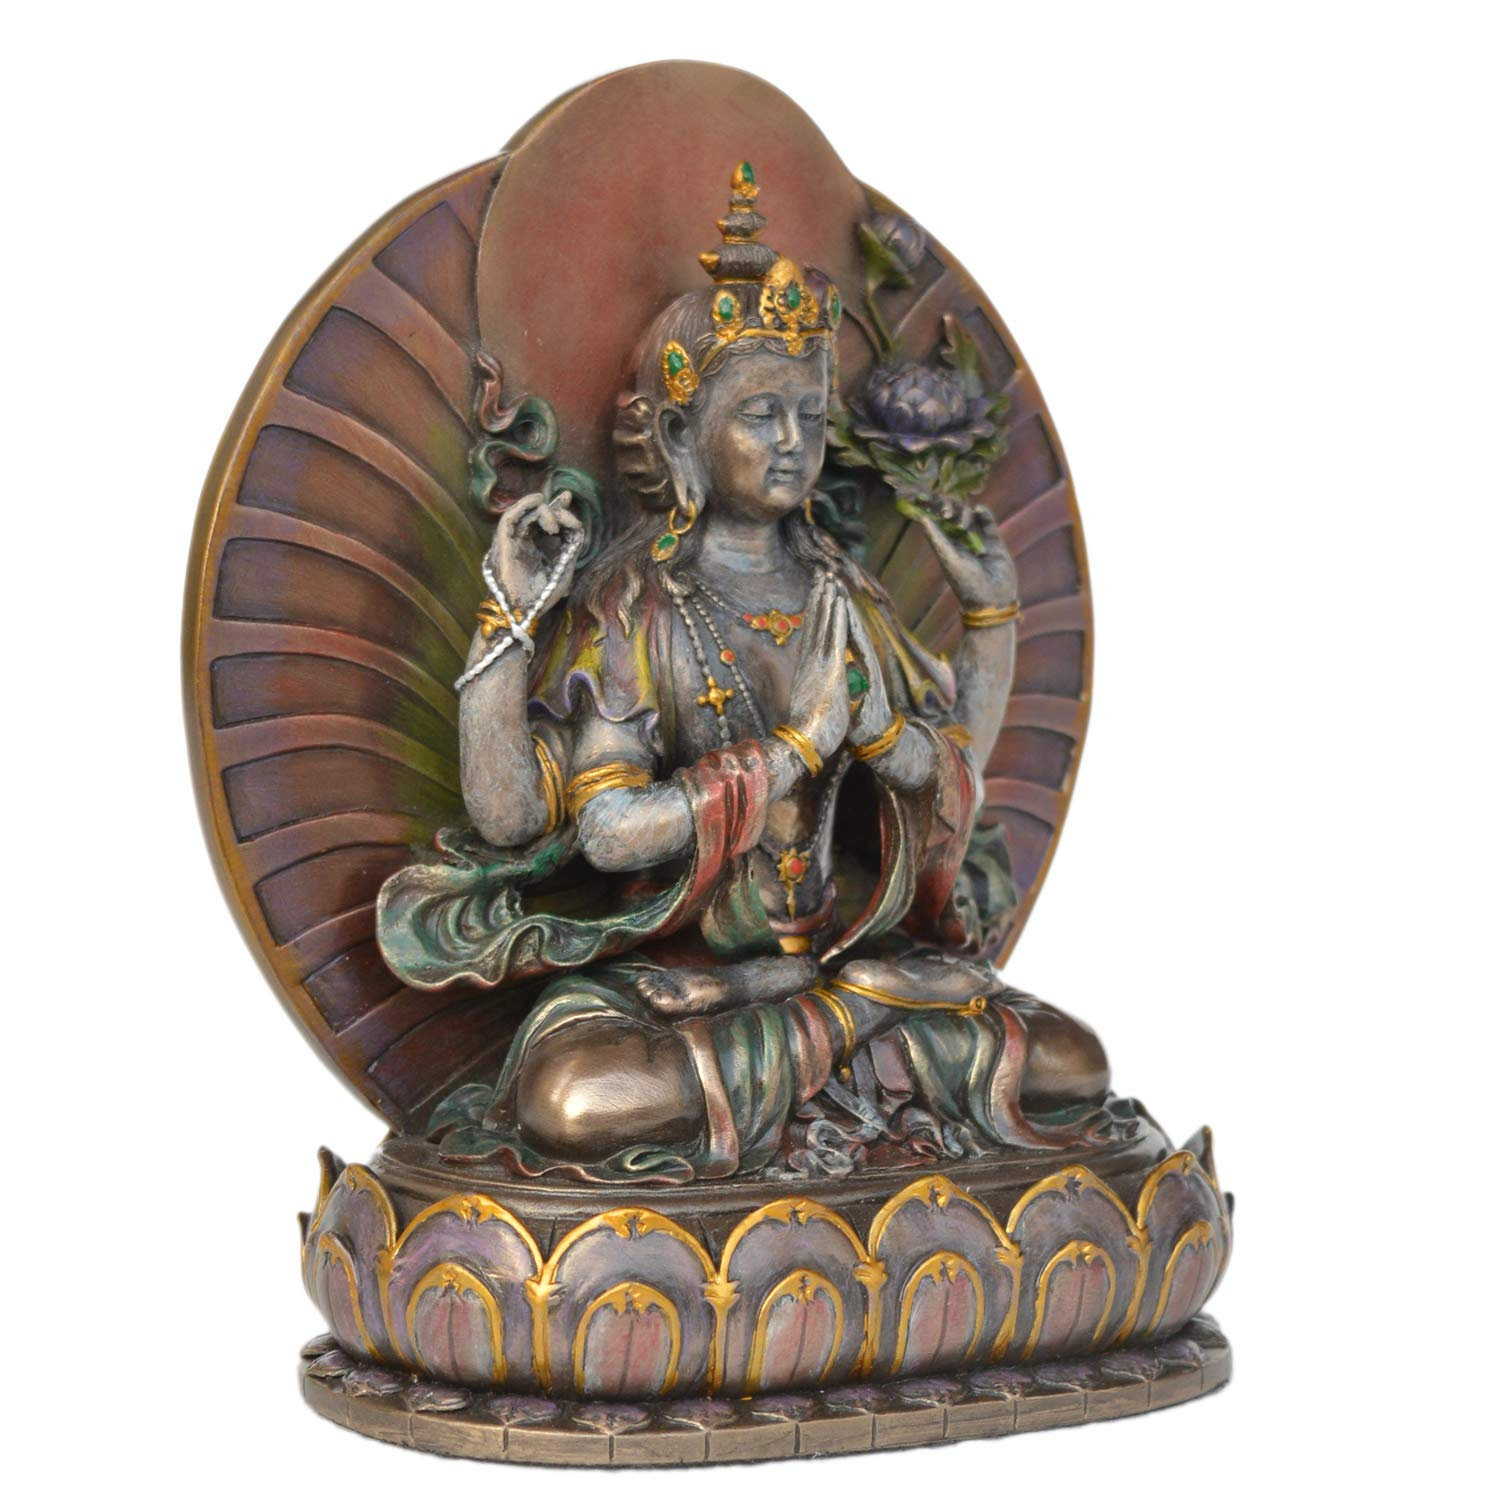 Avalokiteshvara Buddha Statue